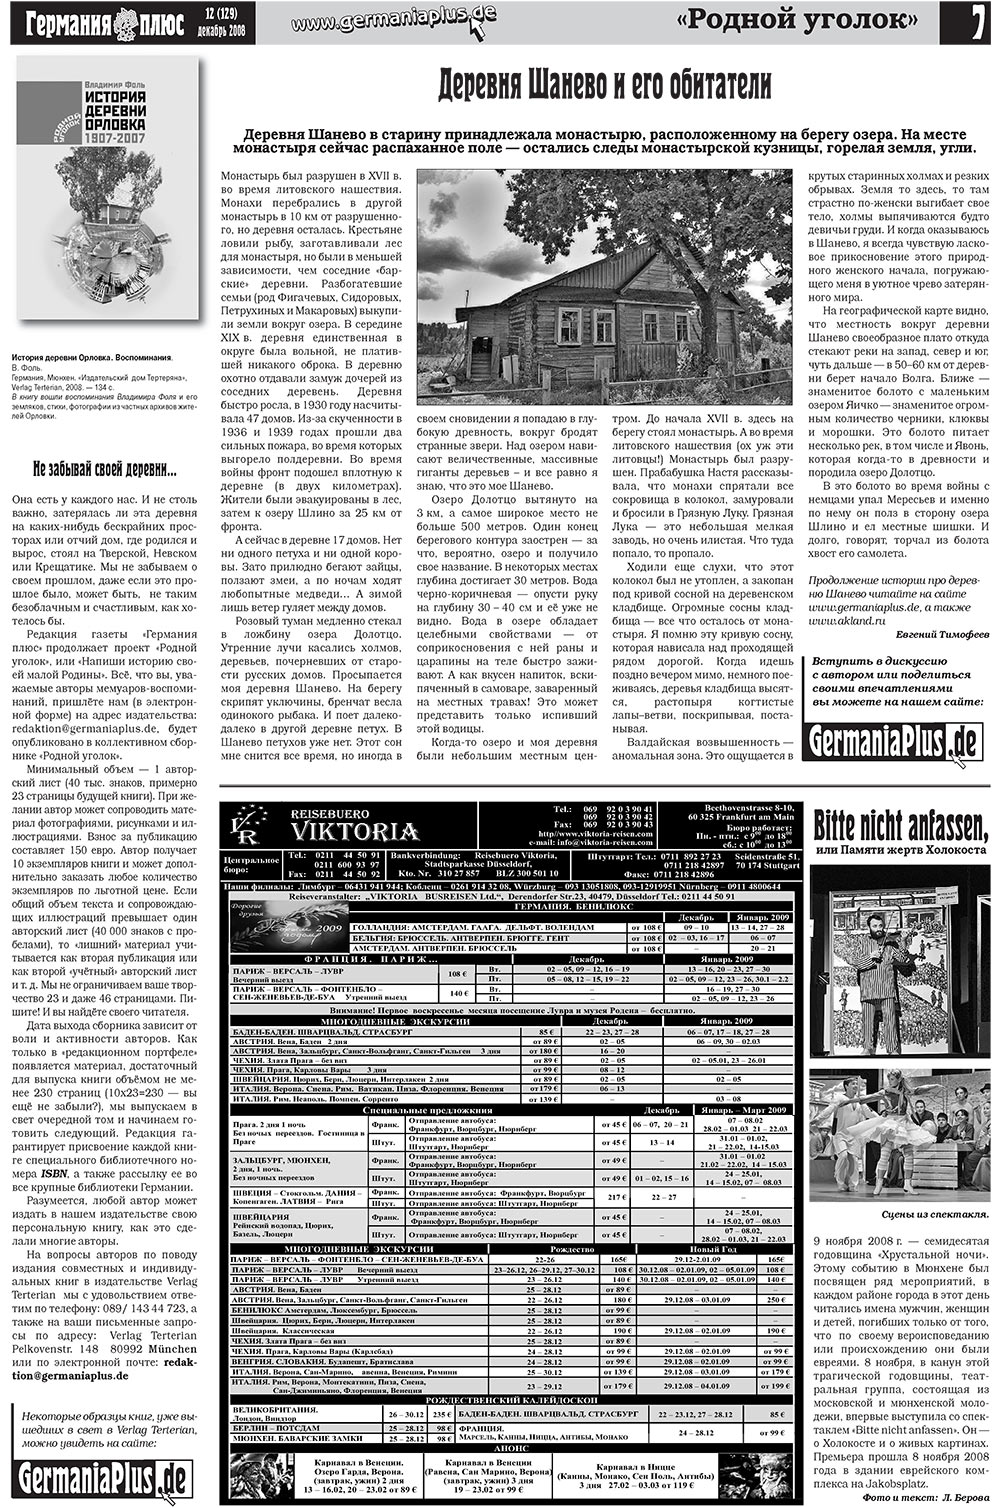 Германия плюс (газета). 2008 год, номер 12, стр. 7